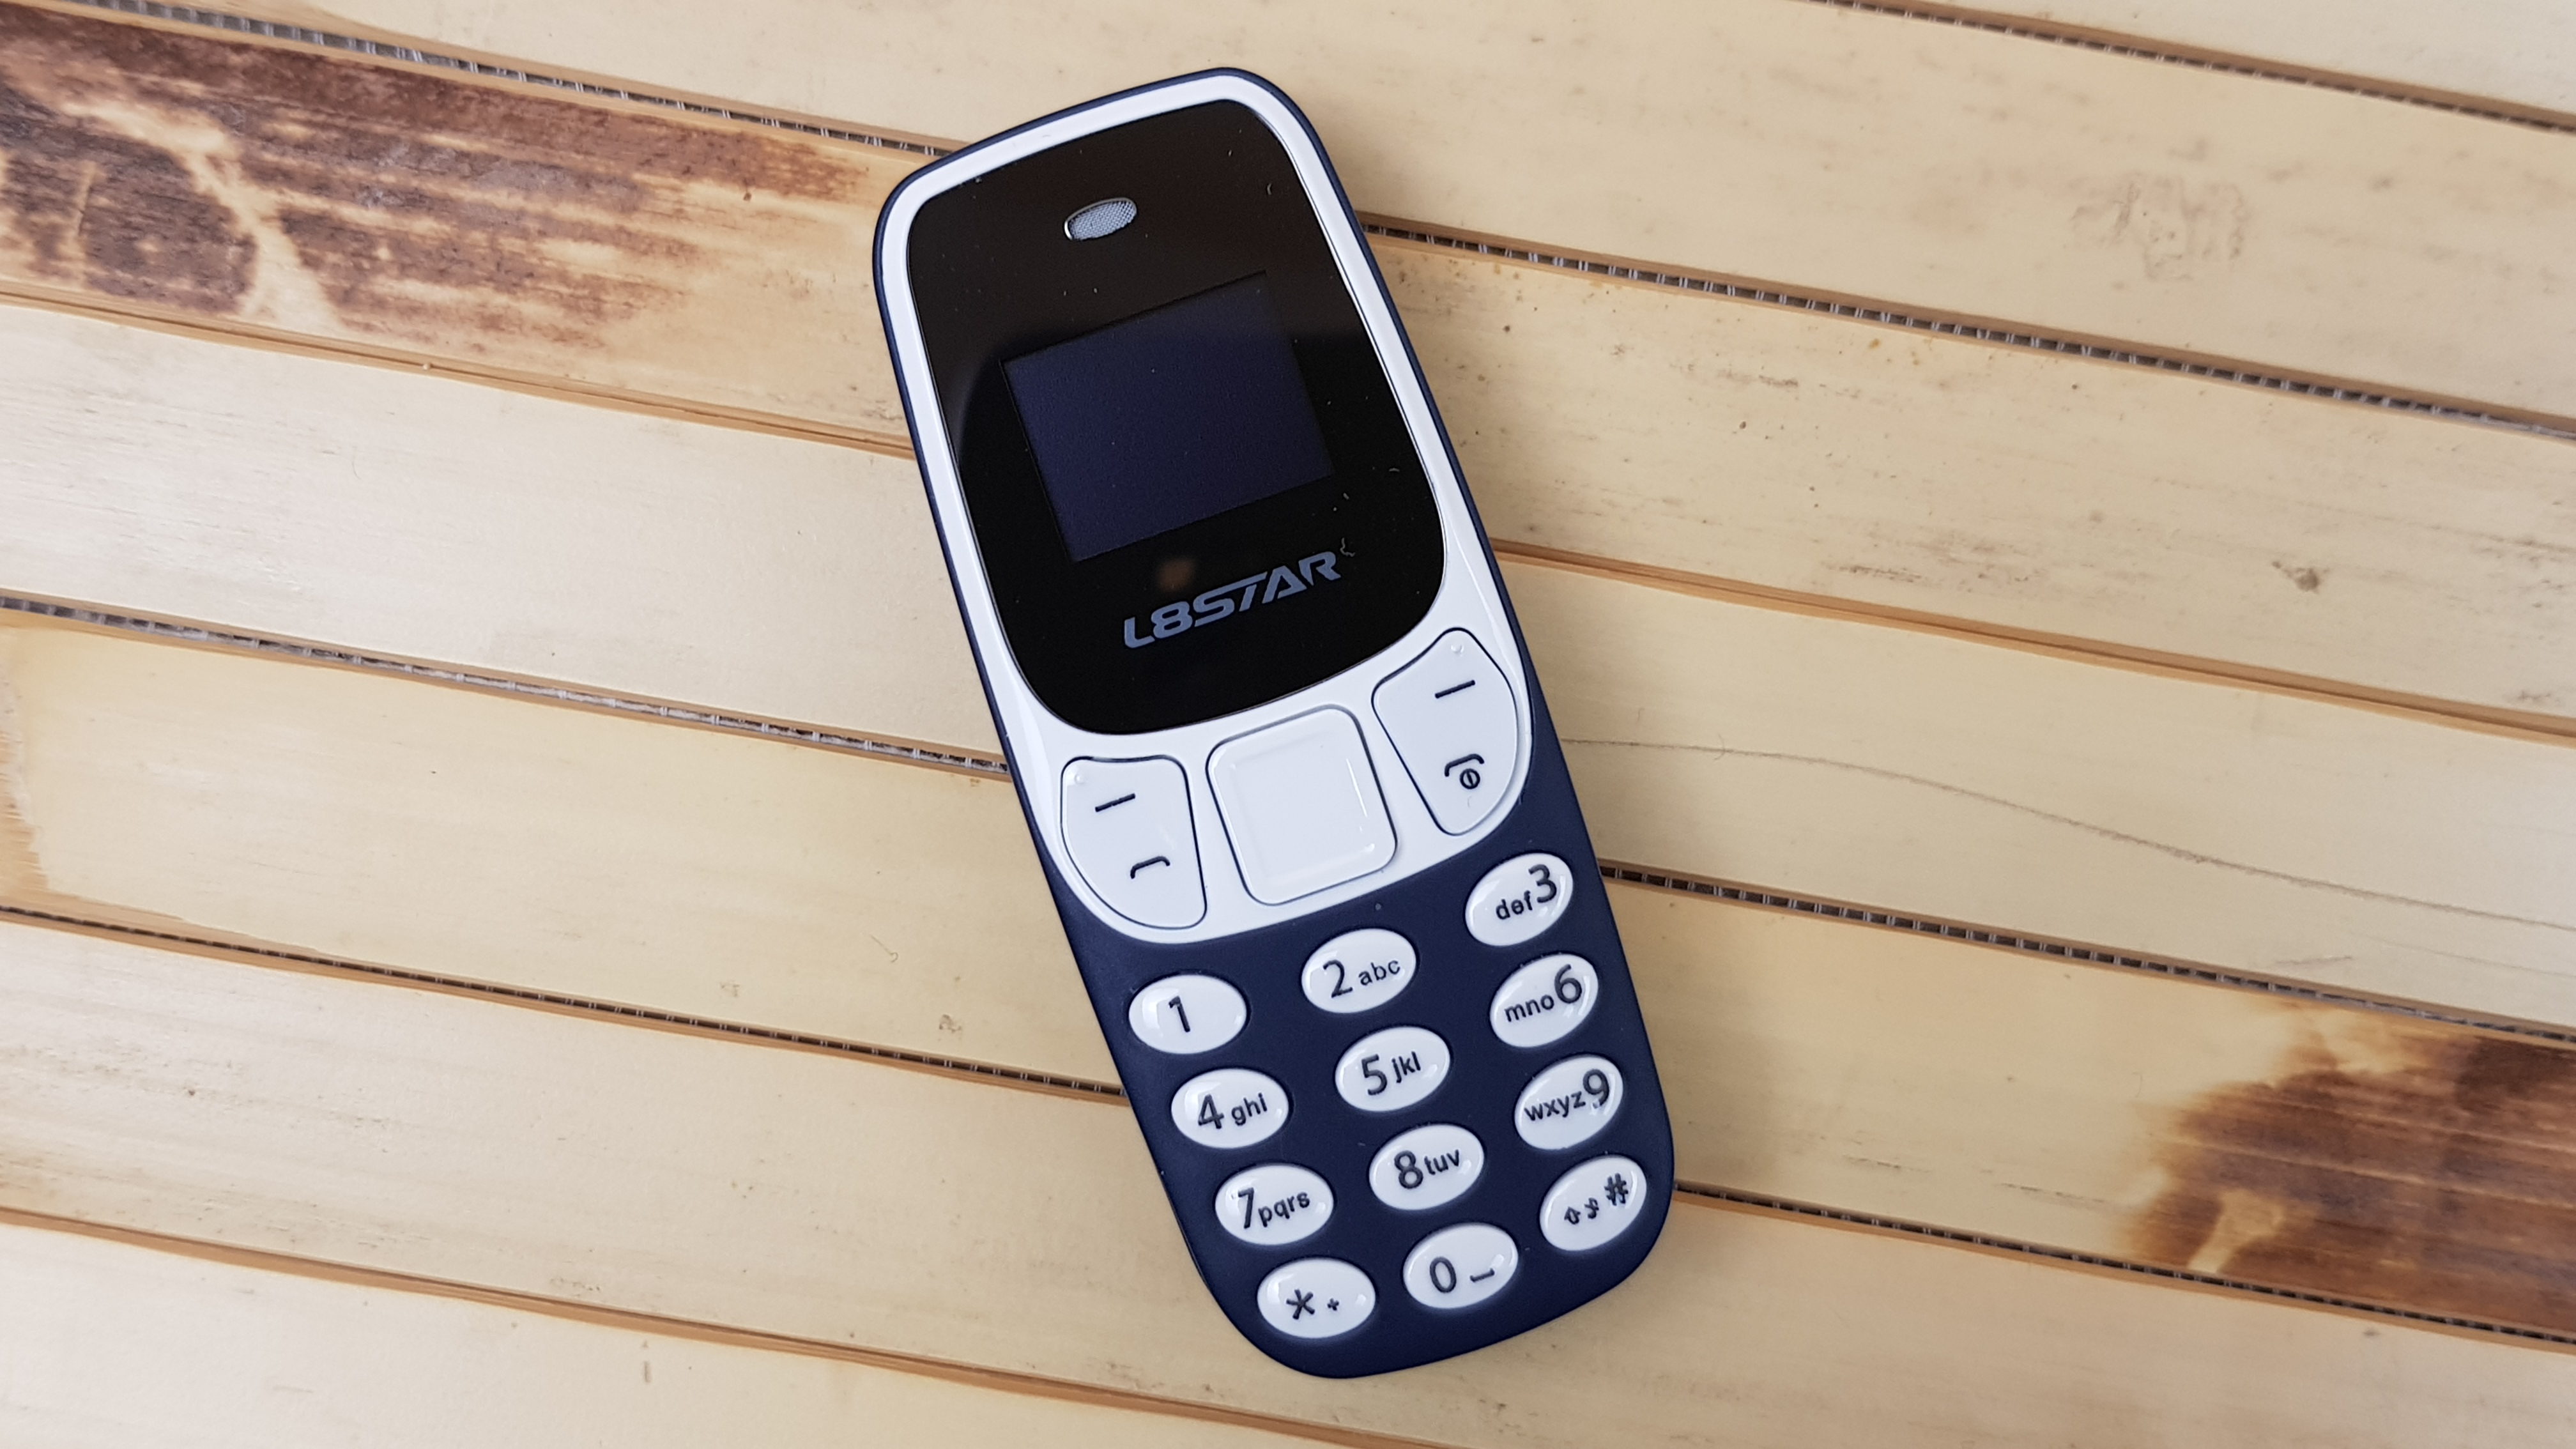 Телефон до 10 версии. L8star bm10. Миниатюрный мобильный телефон l8star bm10. Мини Nokia. Nokia 3310 с двумя SIM.